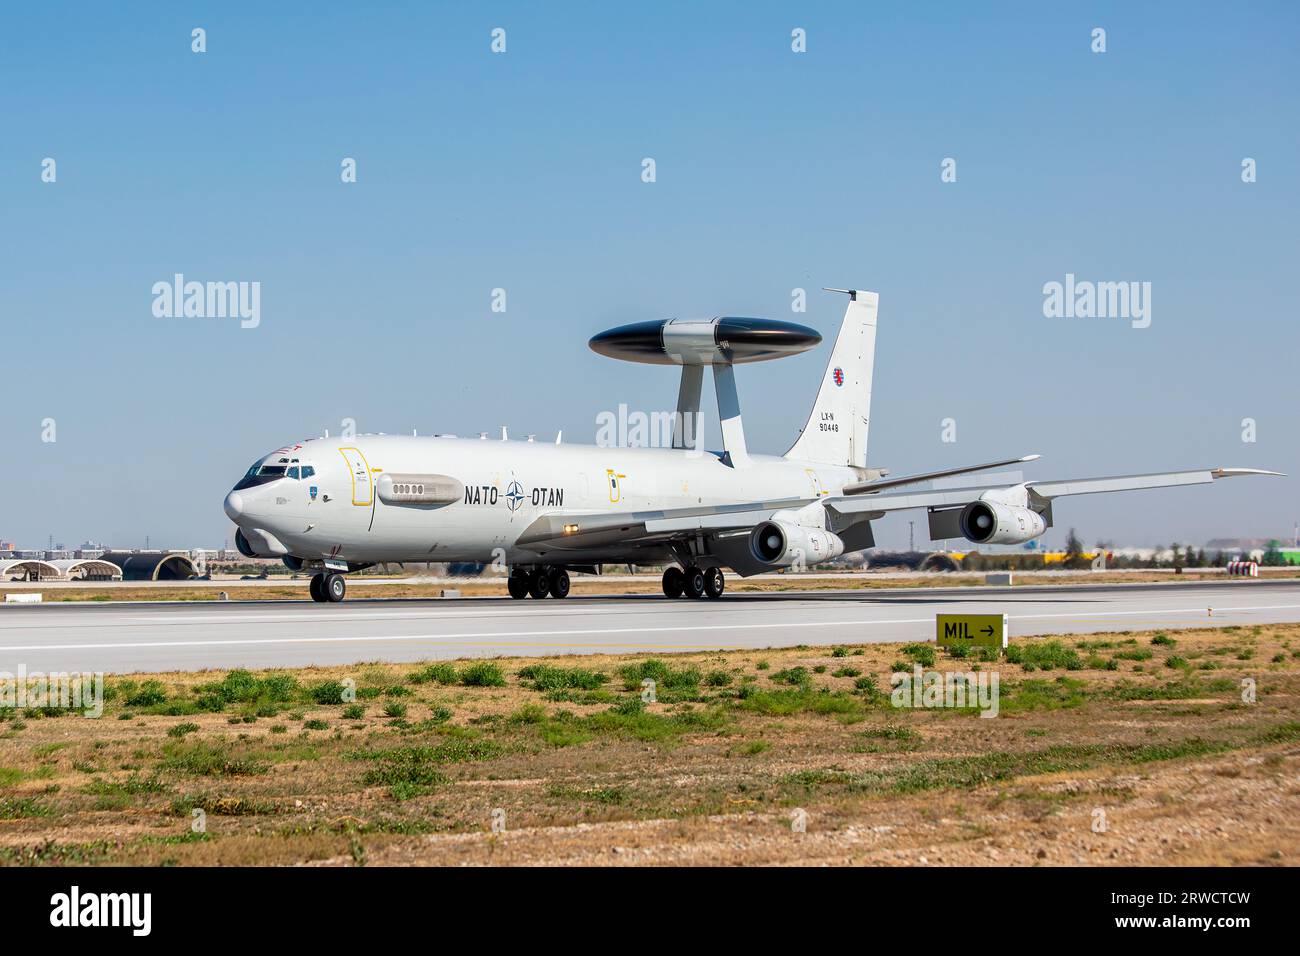 Konya, Türkei - 07 01 2021: Eine Boeing E-3 Sentry Airborne Early Warning and Control (AEW&C) aus den Vereinigten Staaten von Amerika landet während der exe Stockfoto